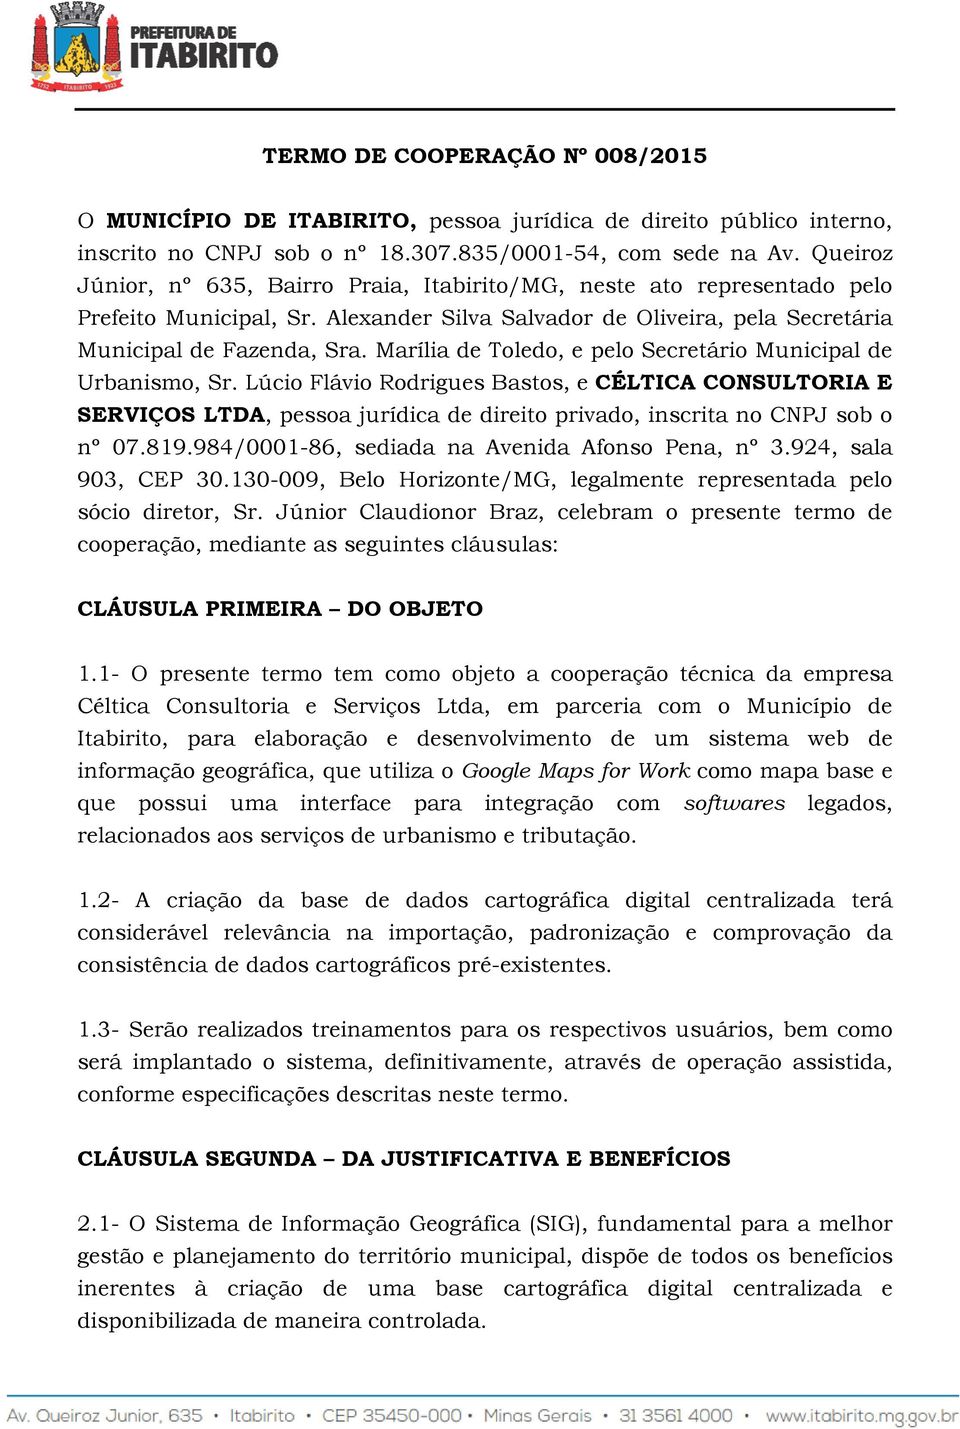 Marília de Toledo, e pelo Secretário Municipal de Urbanismo, Sr. Lúcio Flávio Rodrigues Bastos, e CÉLTICA CONSULTORIA E SERVIÇOS LTDA, pessoa jurídica de direito privado, inscrita no CNPJ sob o nº 07.